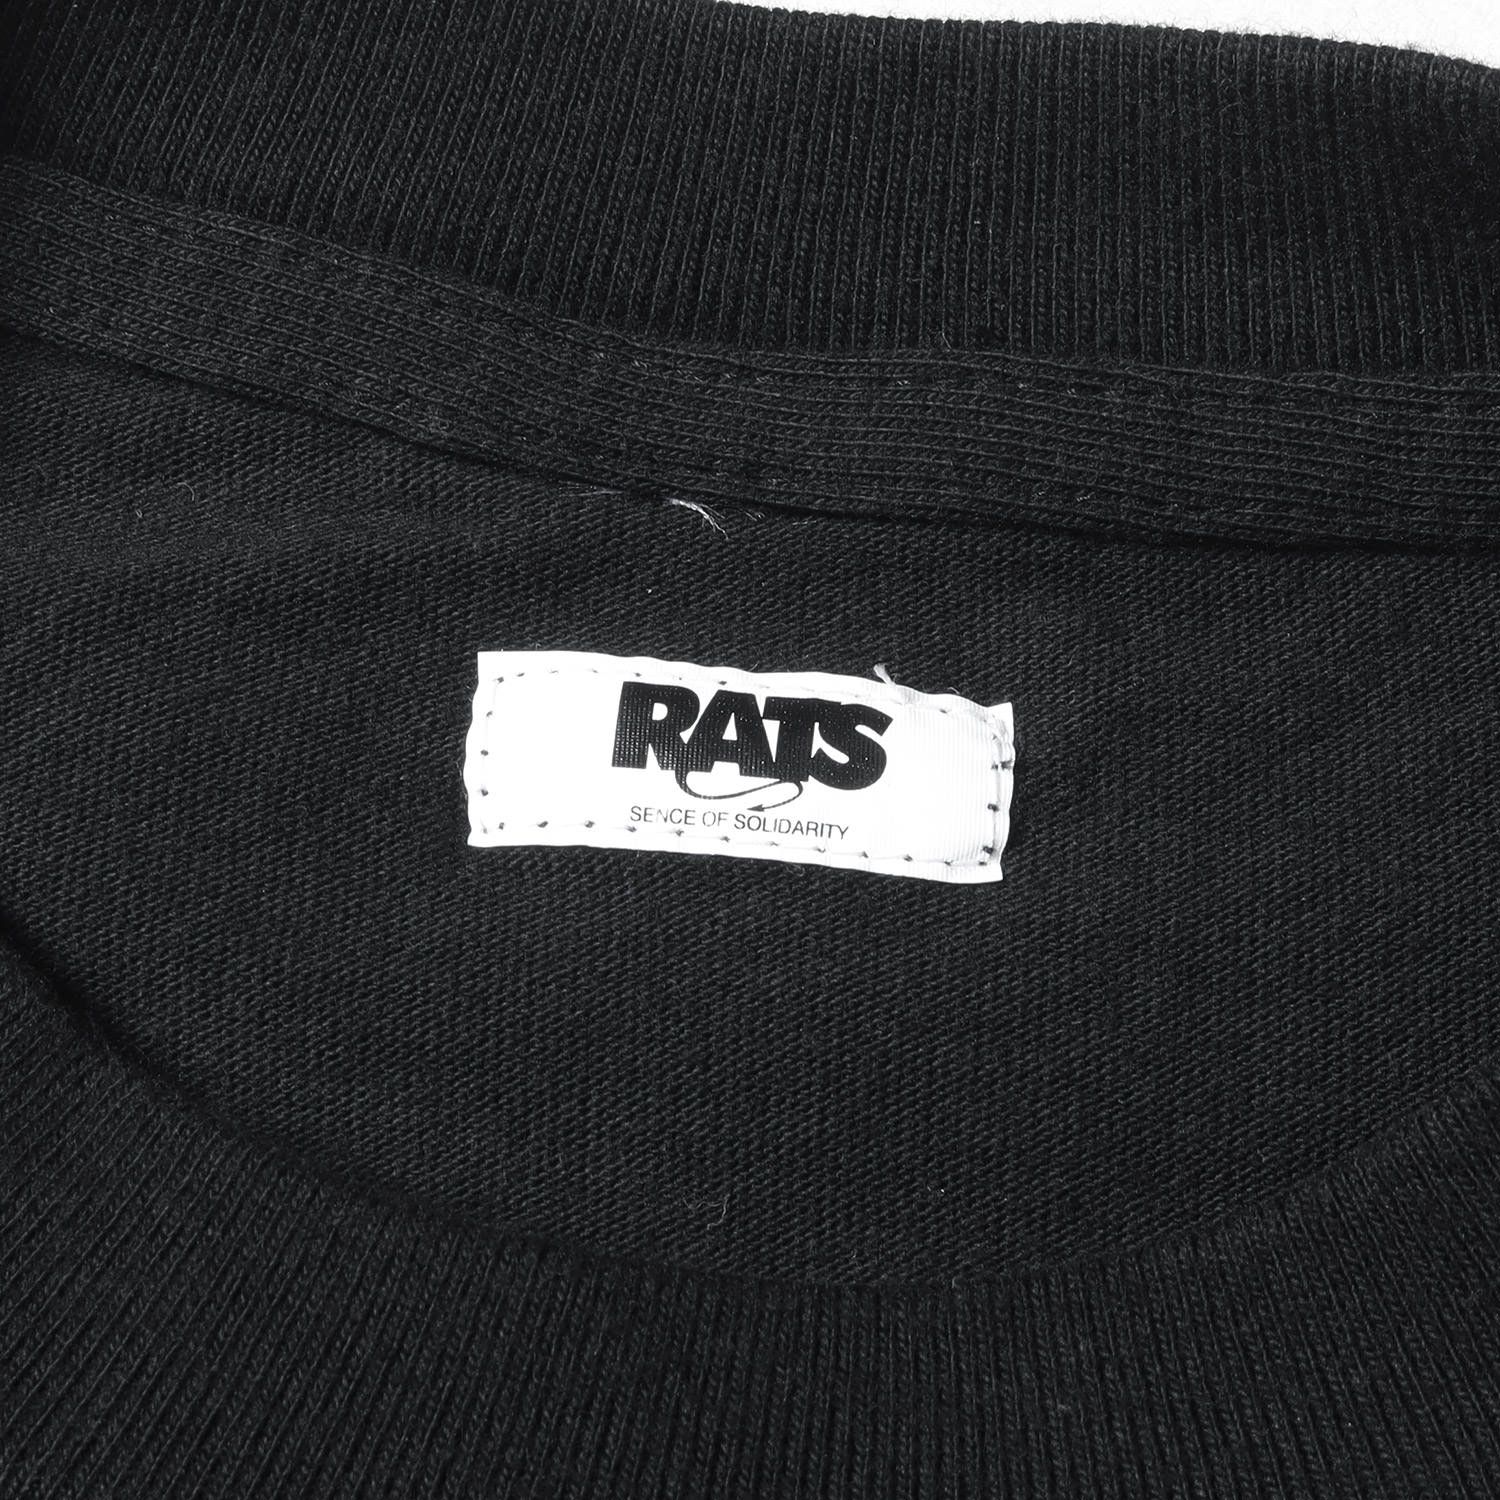 RATS ラッツ Tシャツ FILTHYロゴ クルーネックTシャツ ブラック 黒 記載なし(S位) トップス カットソー 半袖 【メンズ】【美品】